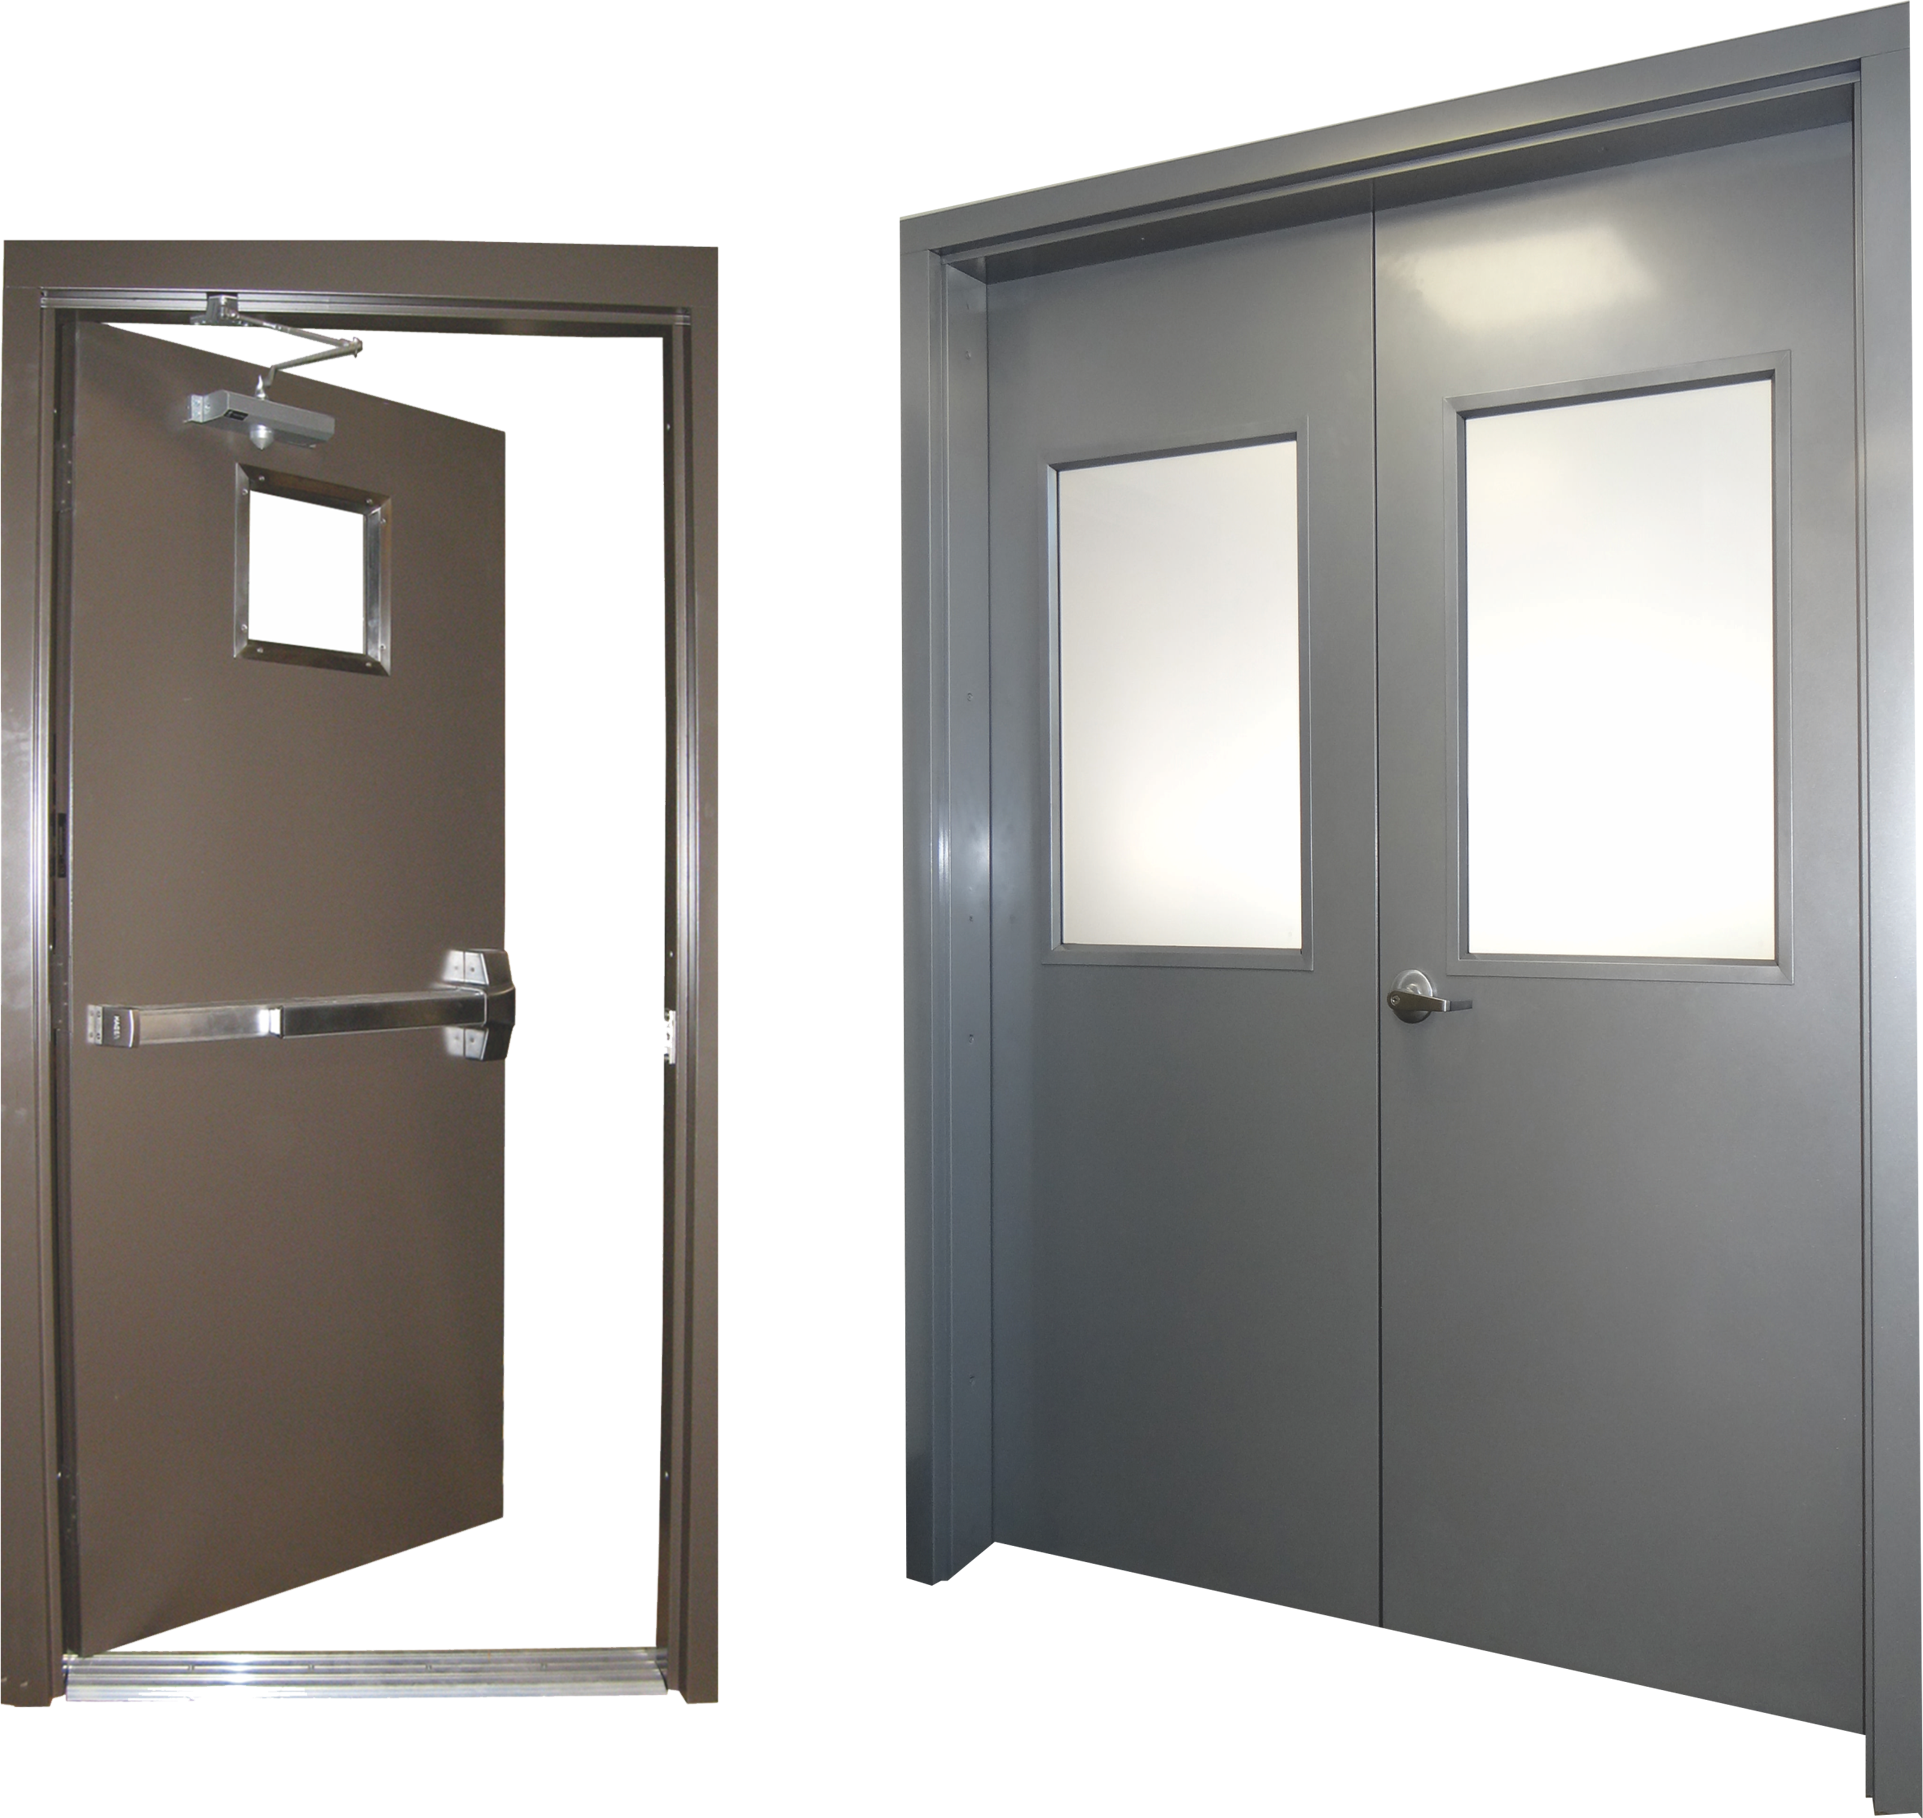 With Frame Garage Security Steel Door Set New Self Storage Fire Door 